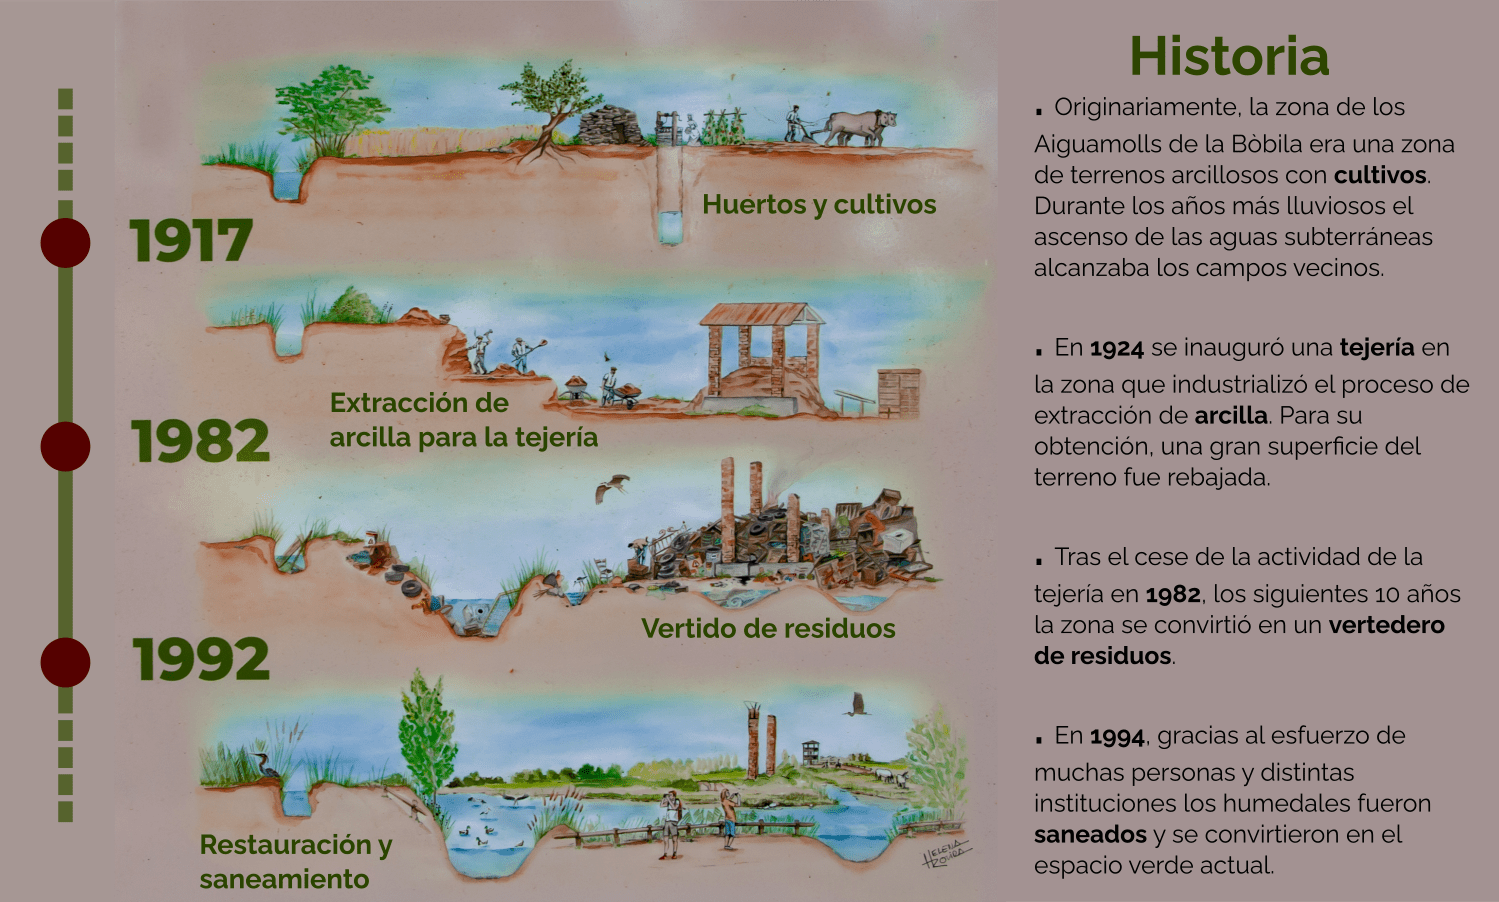 Historia dels aiguamolls de la Bòbila